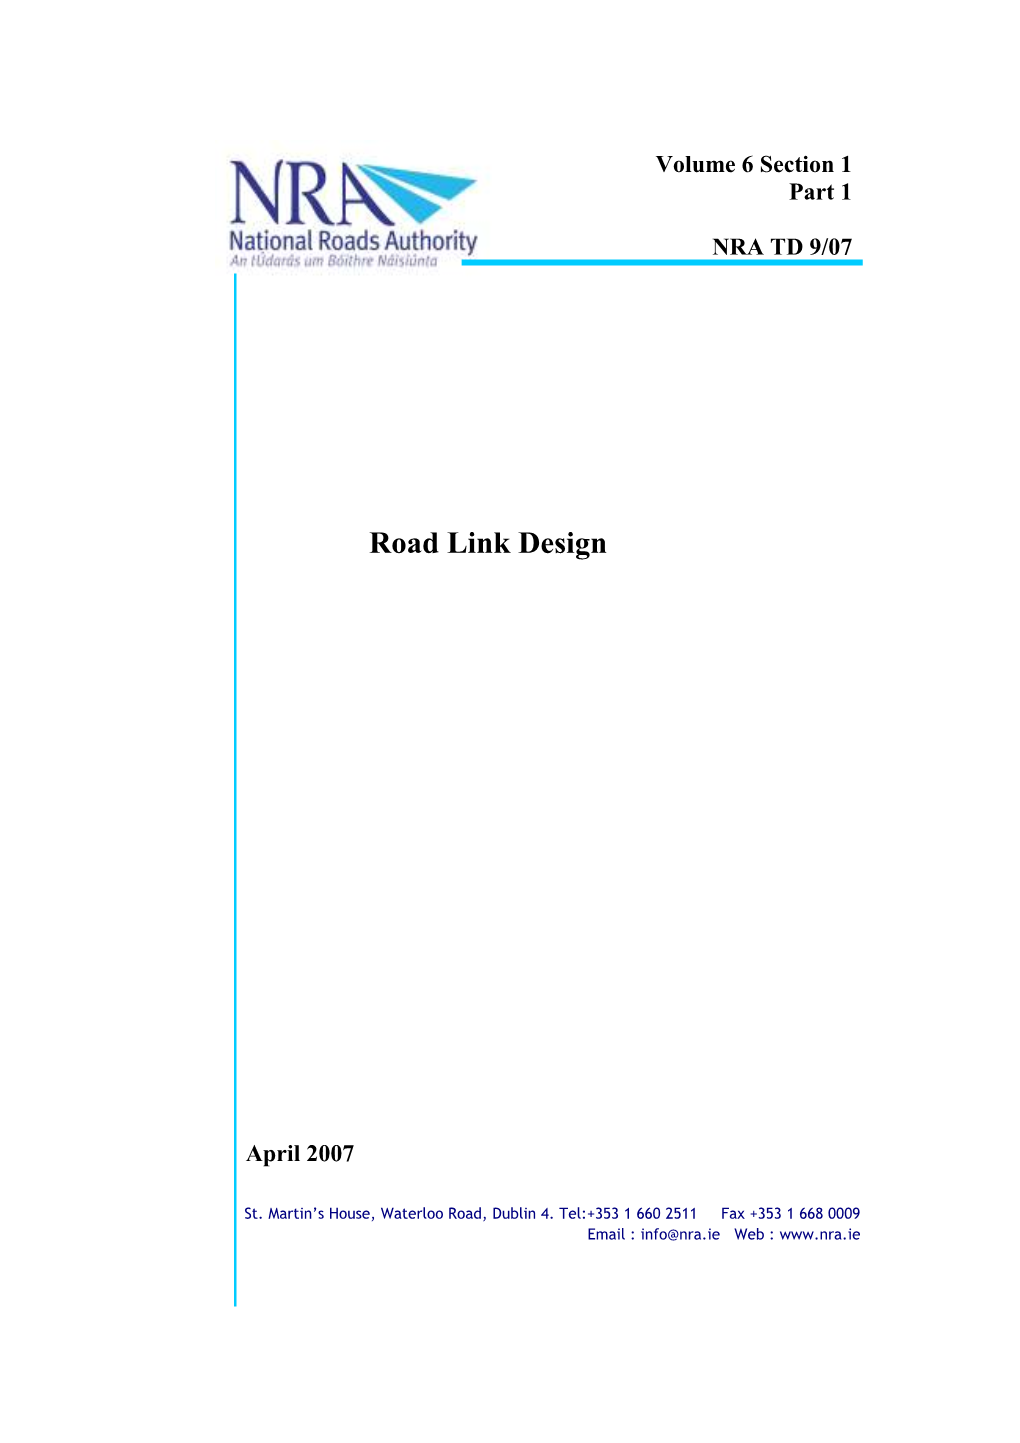 Road Link Design